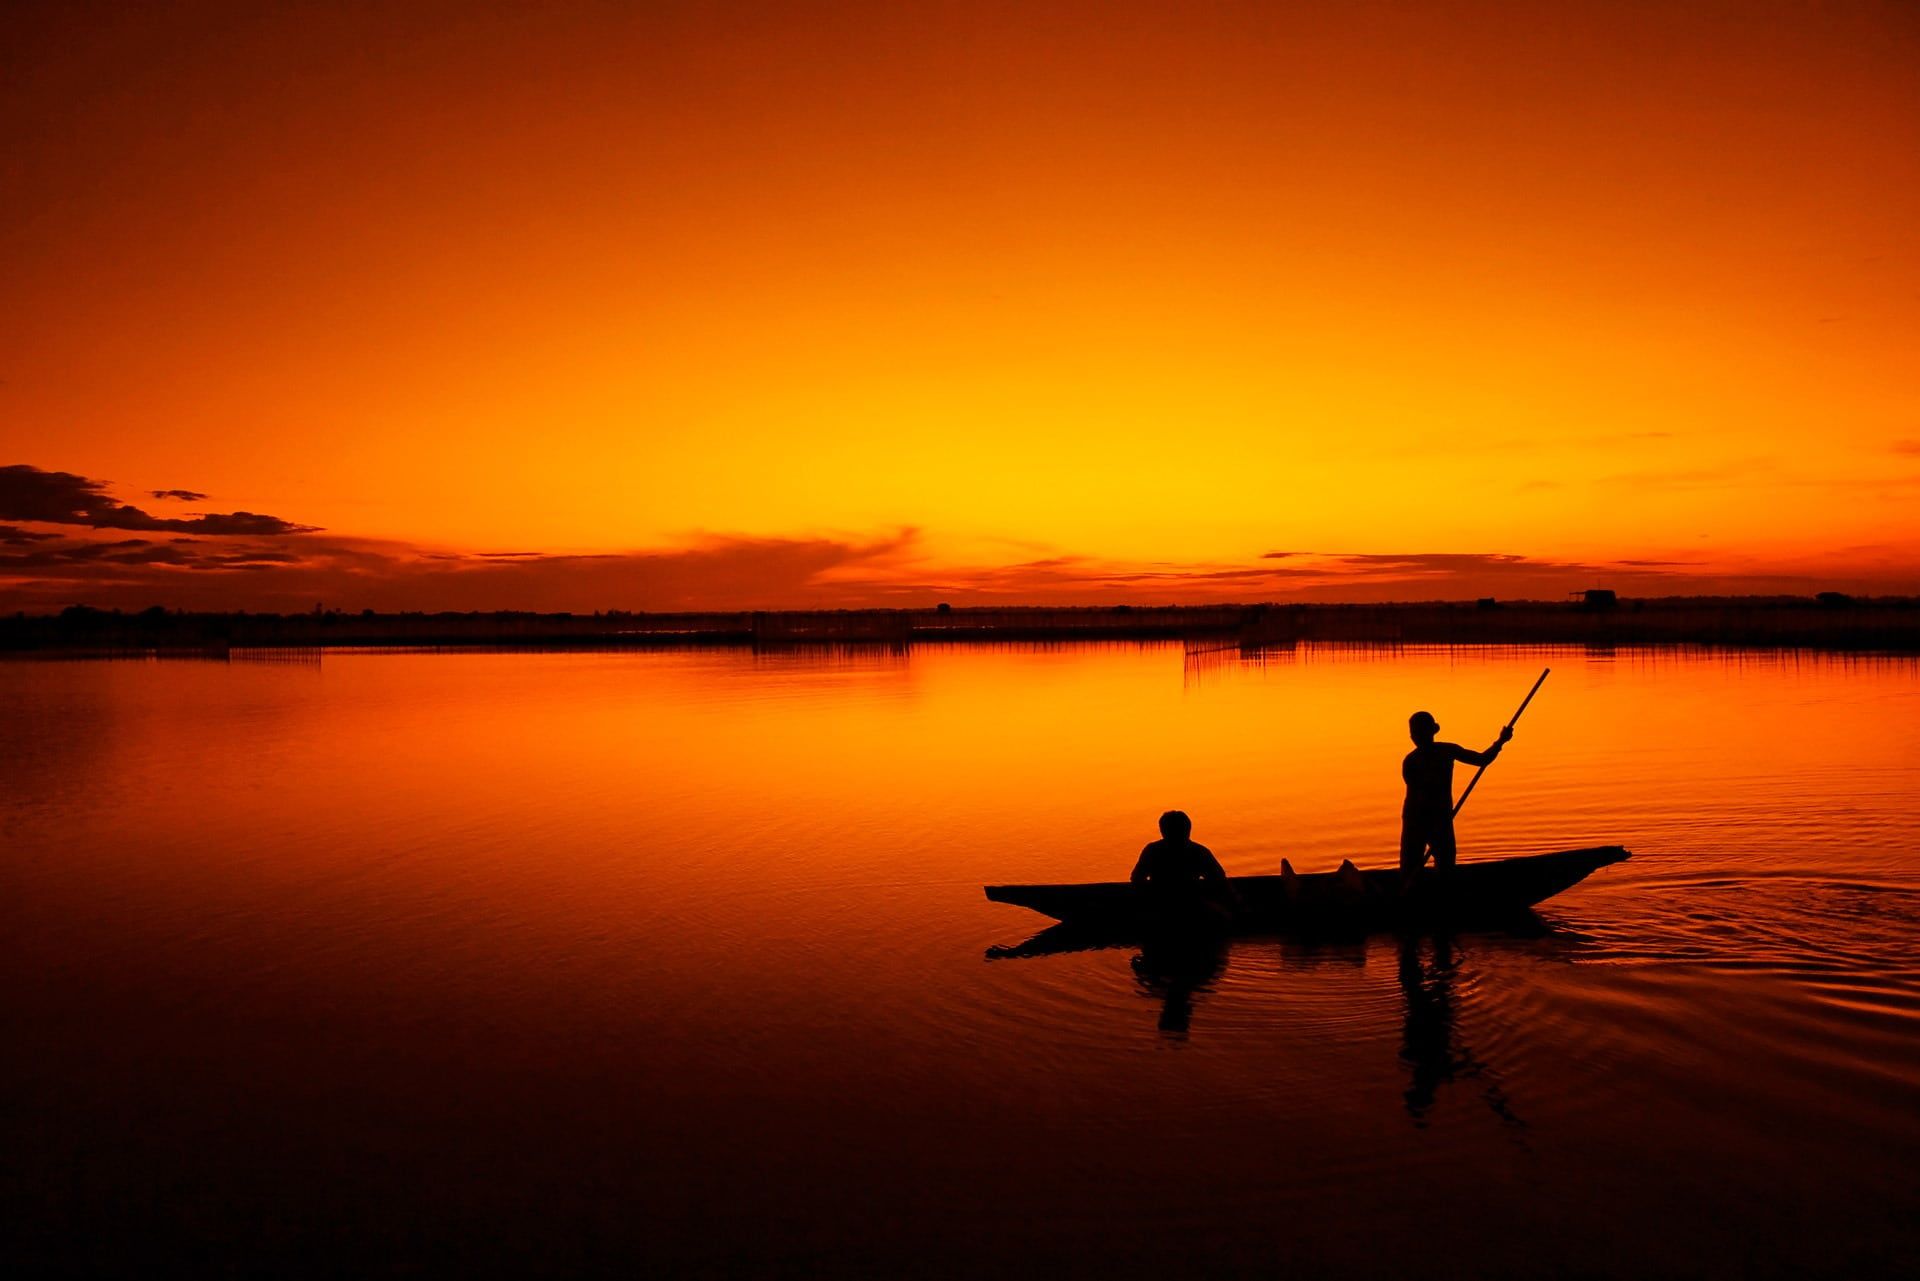 silhouette of two men on canoe during sunset #fishing #boat #fisherman tam giang lagoon #hue #sunset #vietnam bi. Salt water fishing, Fishing trip, Salt and water